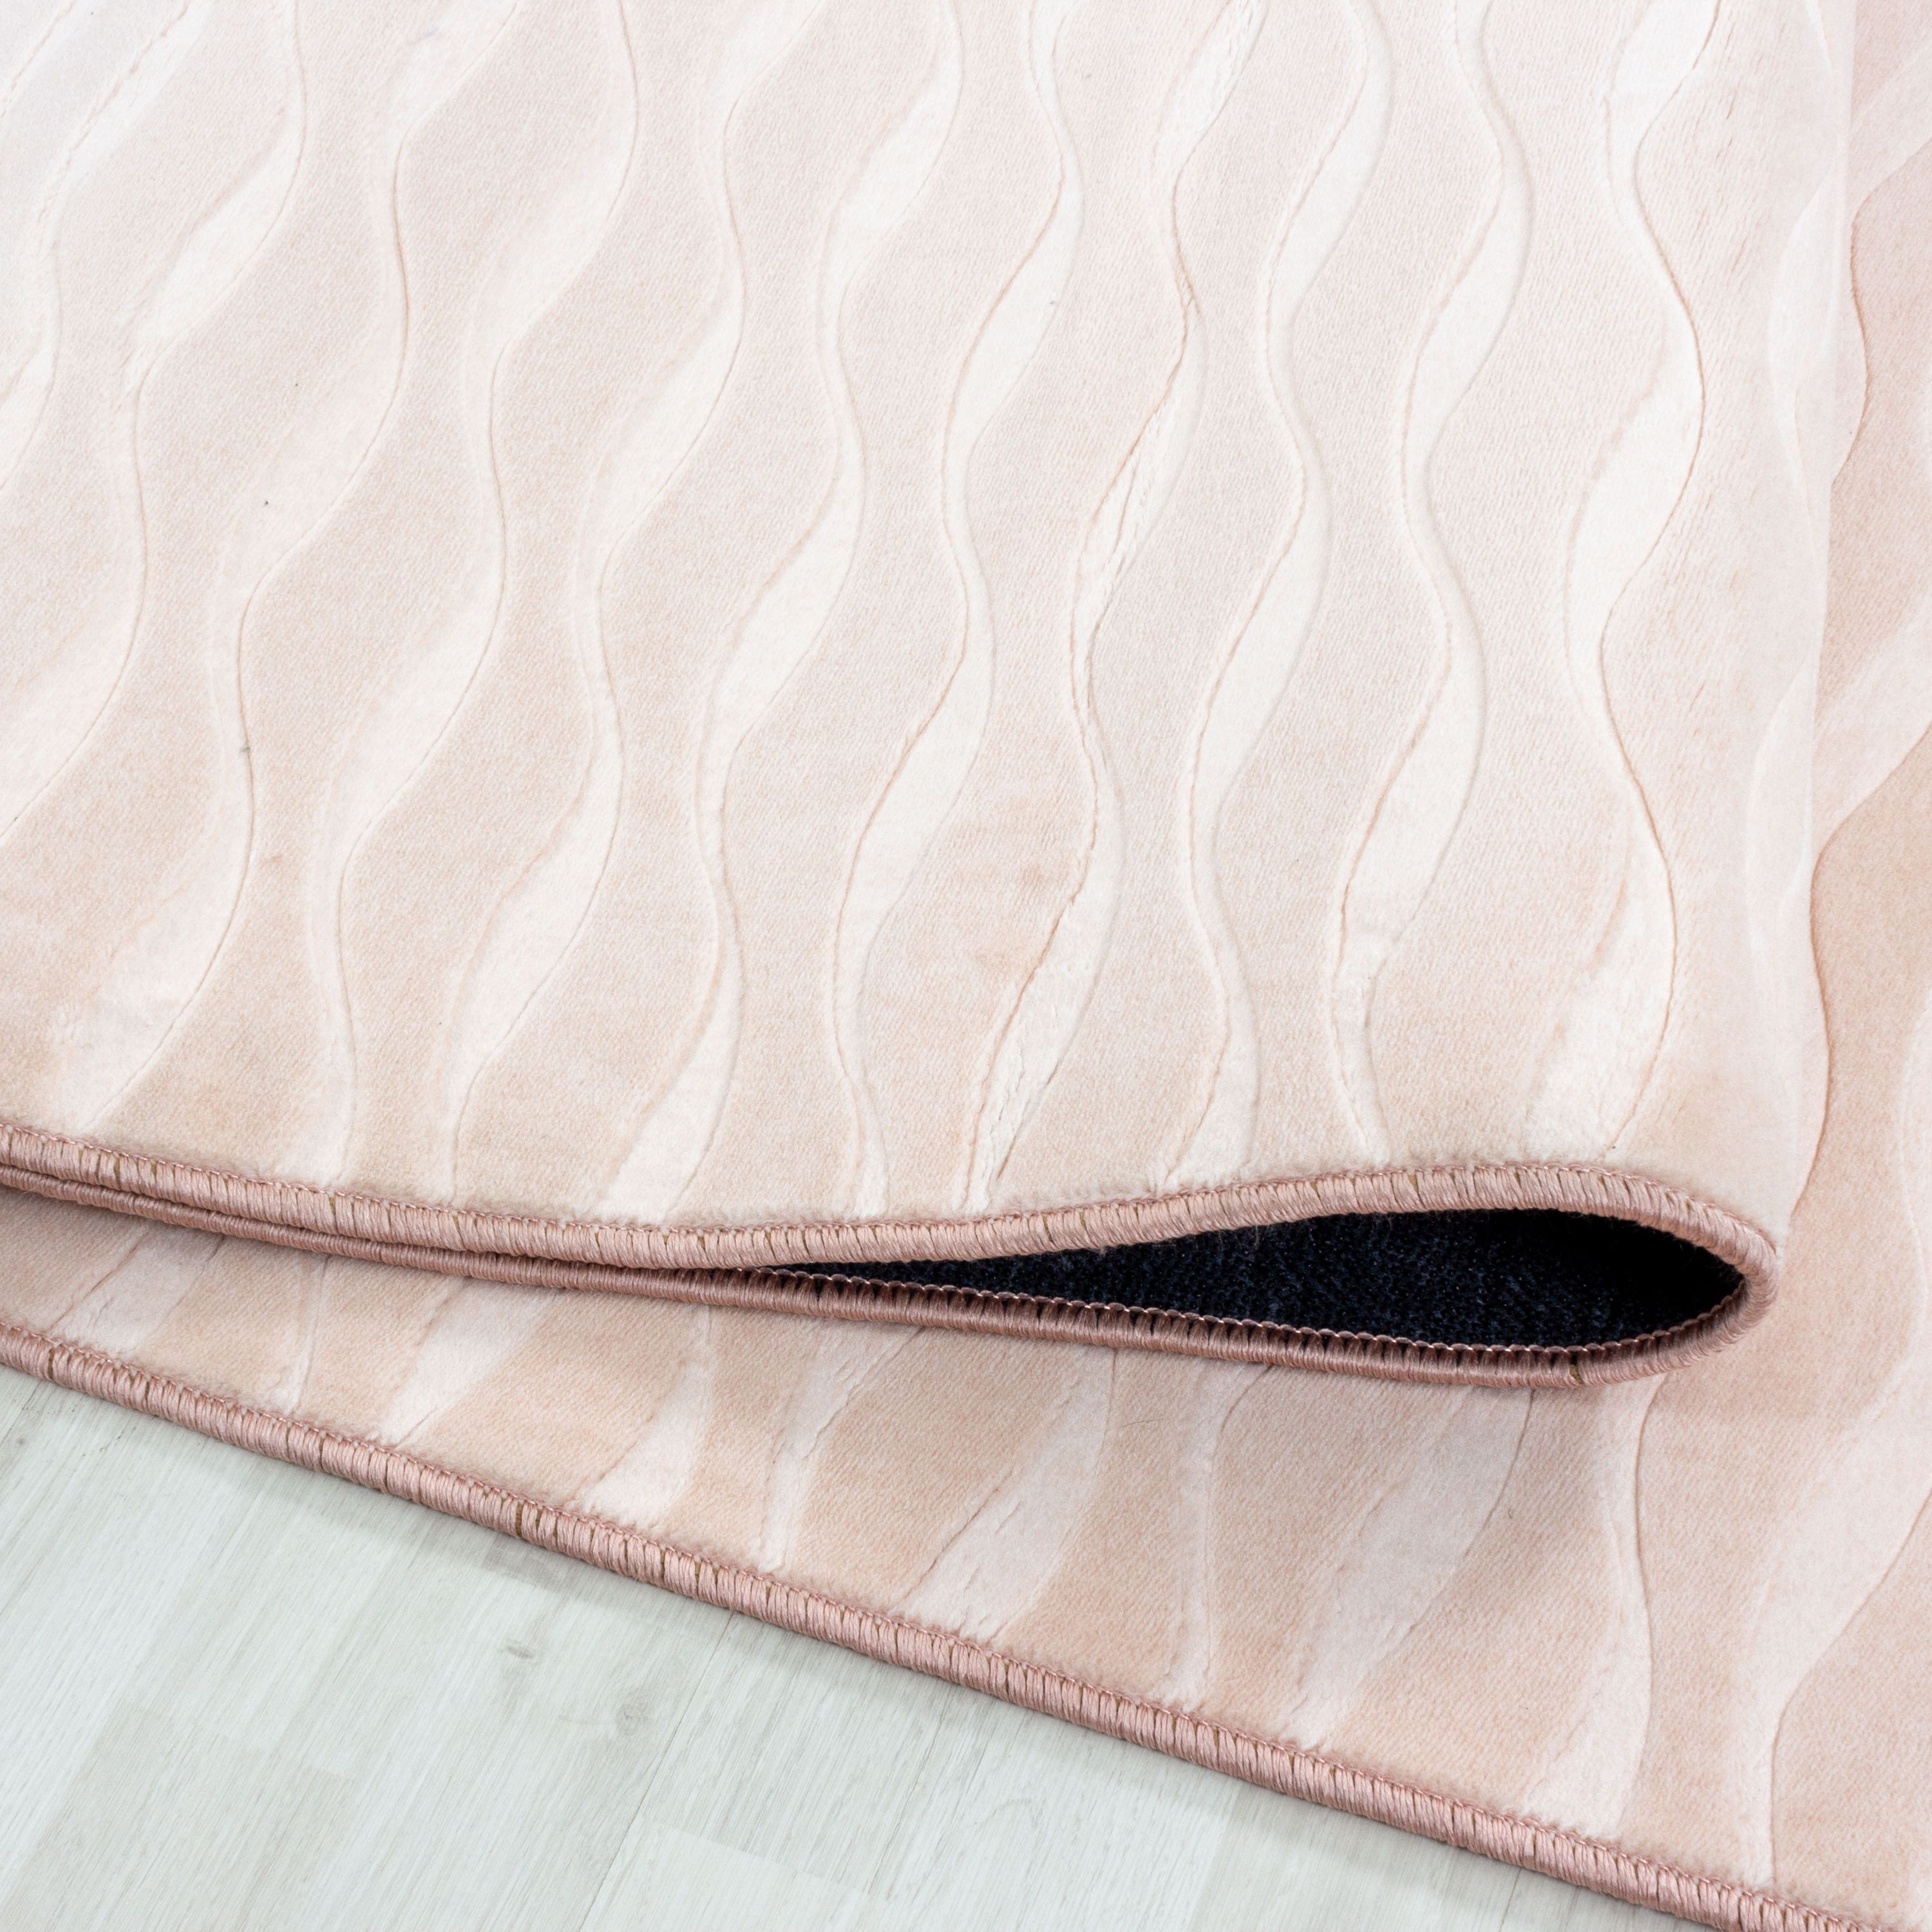 Kurzflor Teppich Wohnzimmerteppich Antirutsch Waschbar Wellen Linien Design Sand